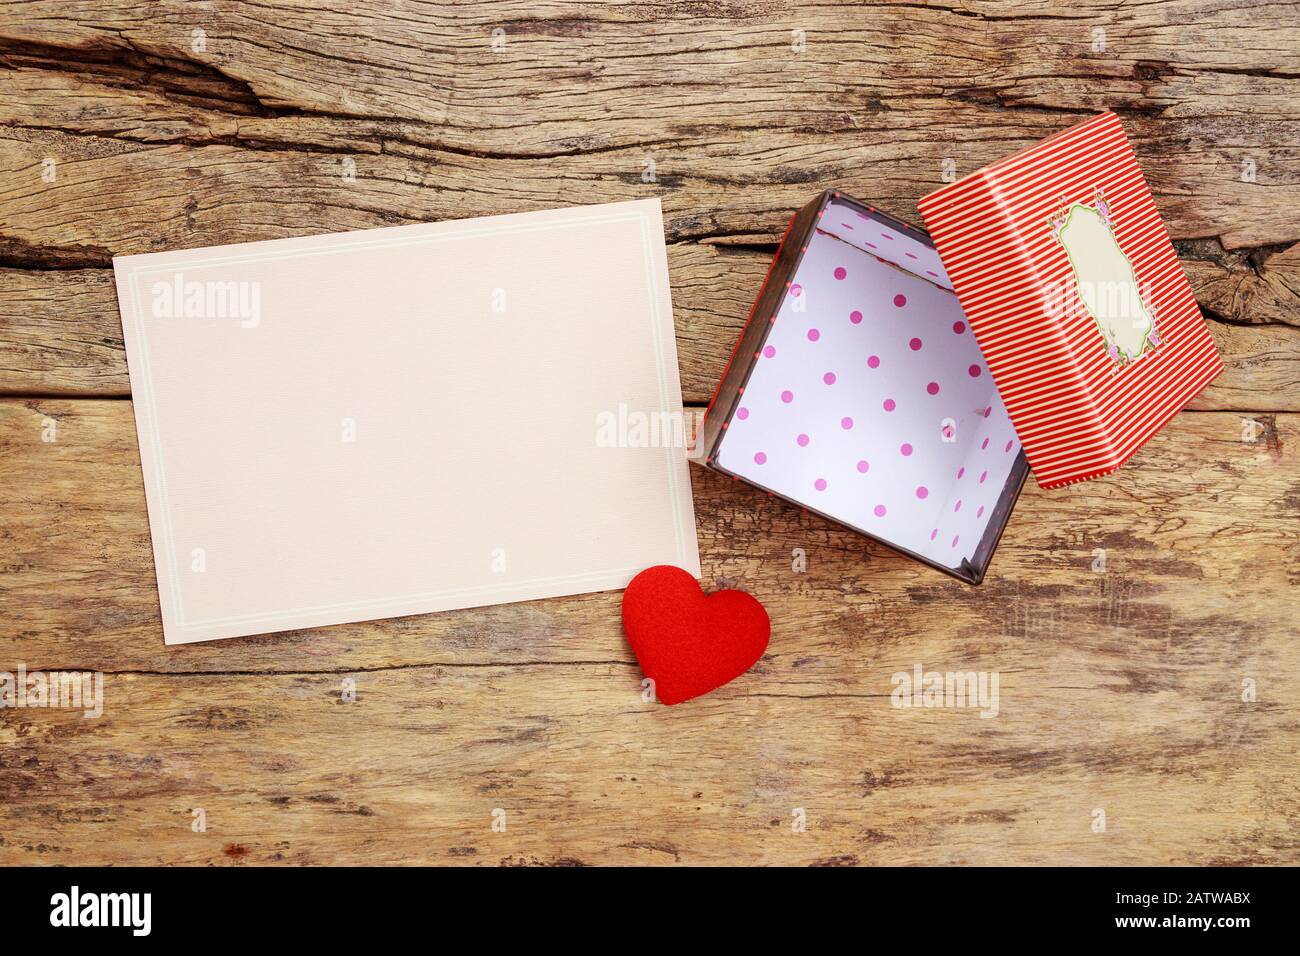 Unbeschriftete pinkfarbene Grußkarte mit Rahmen und leerem roten Geschenkkasten mit offener Abdeckung, mit rotem Herz auf Holzhintergrund verziert Stockfoto